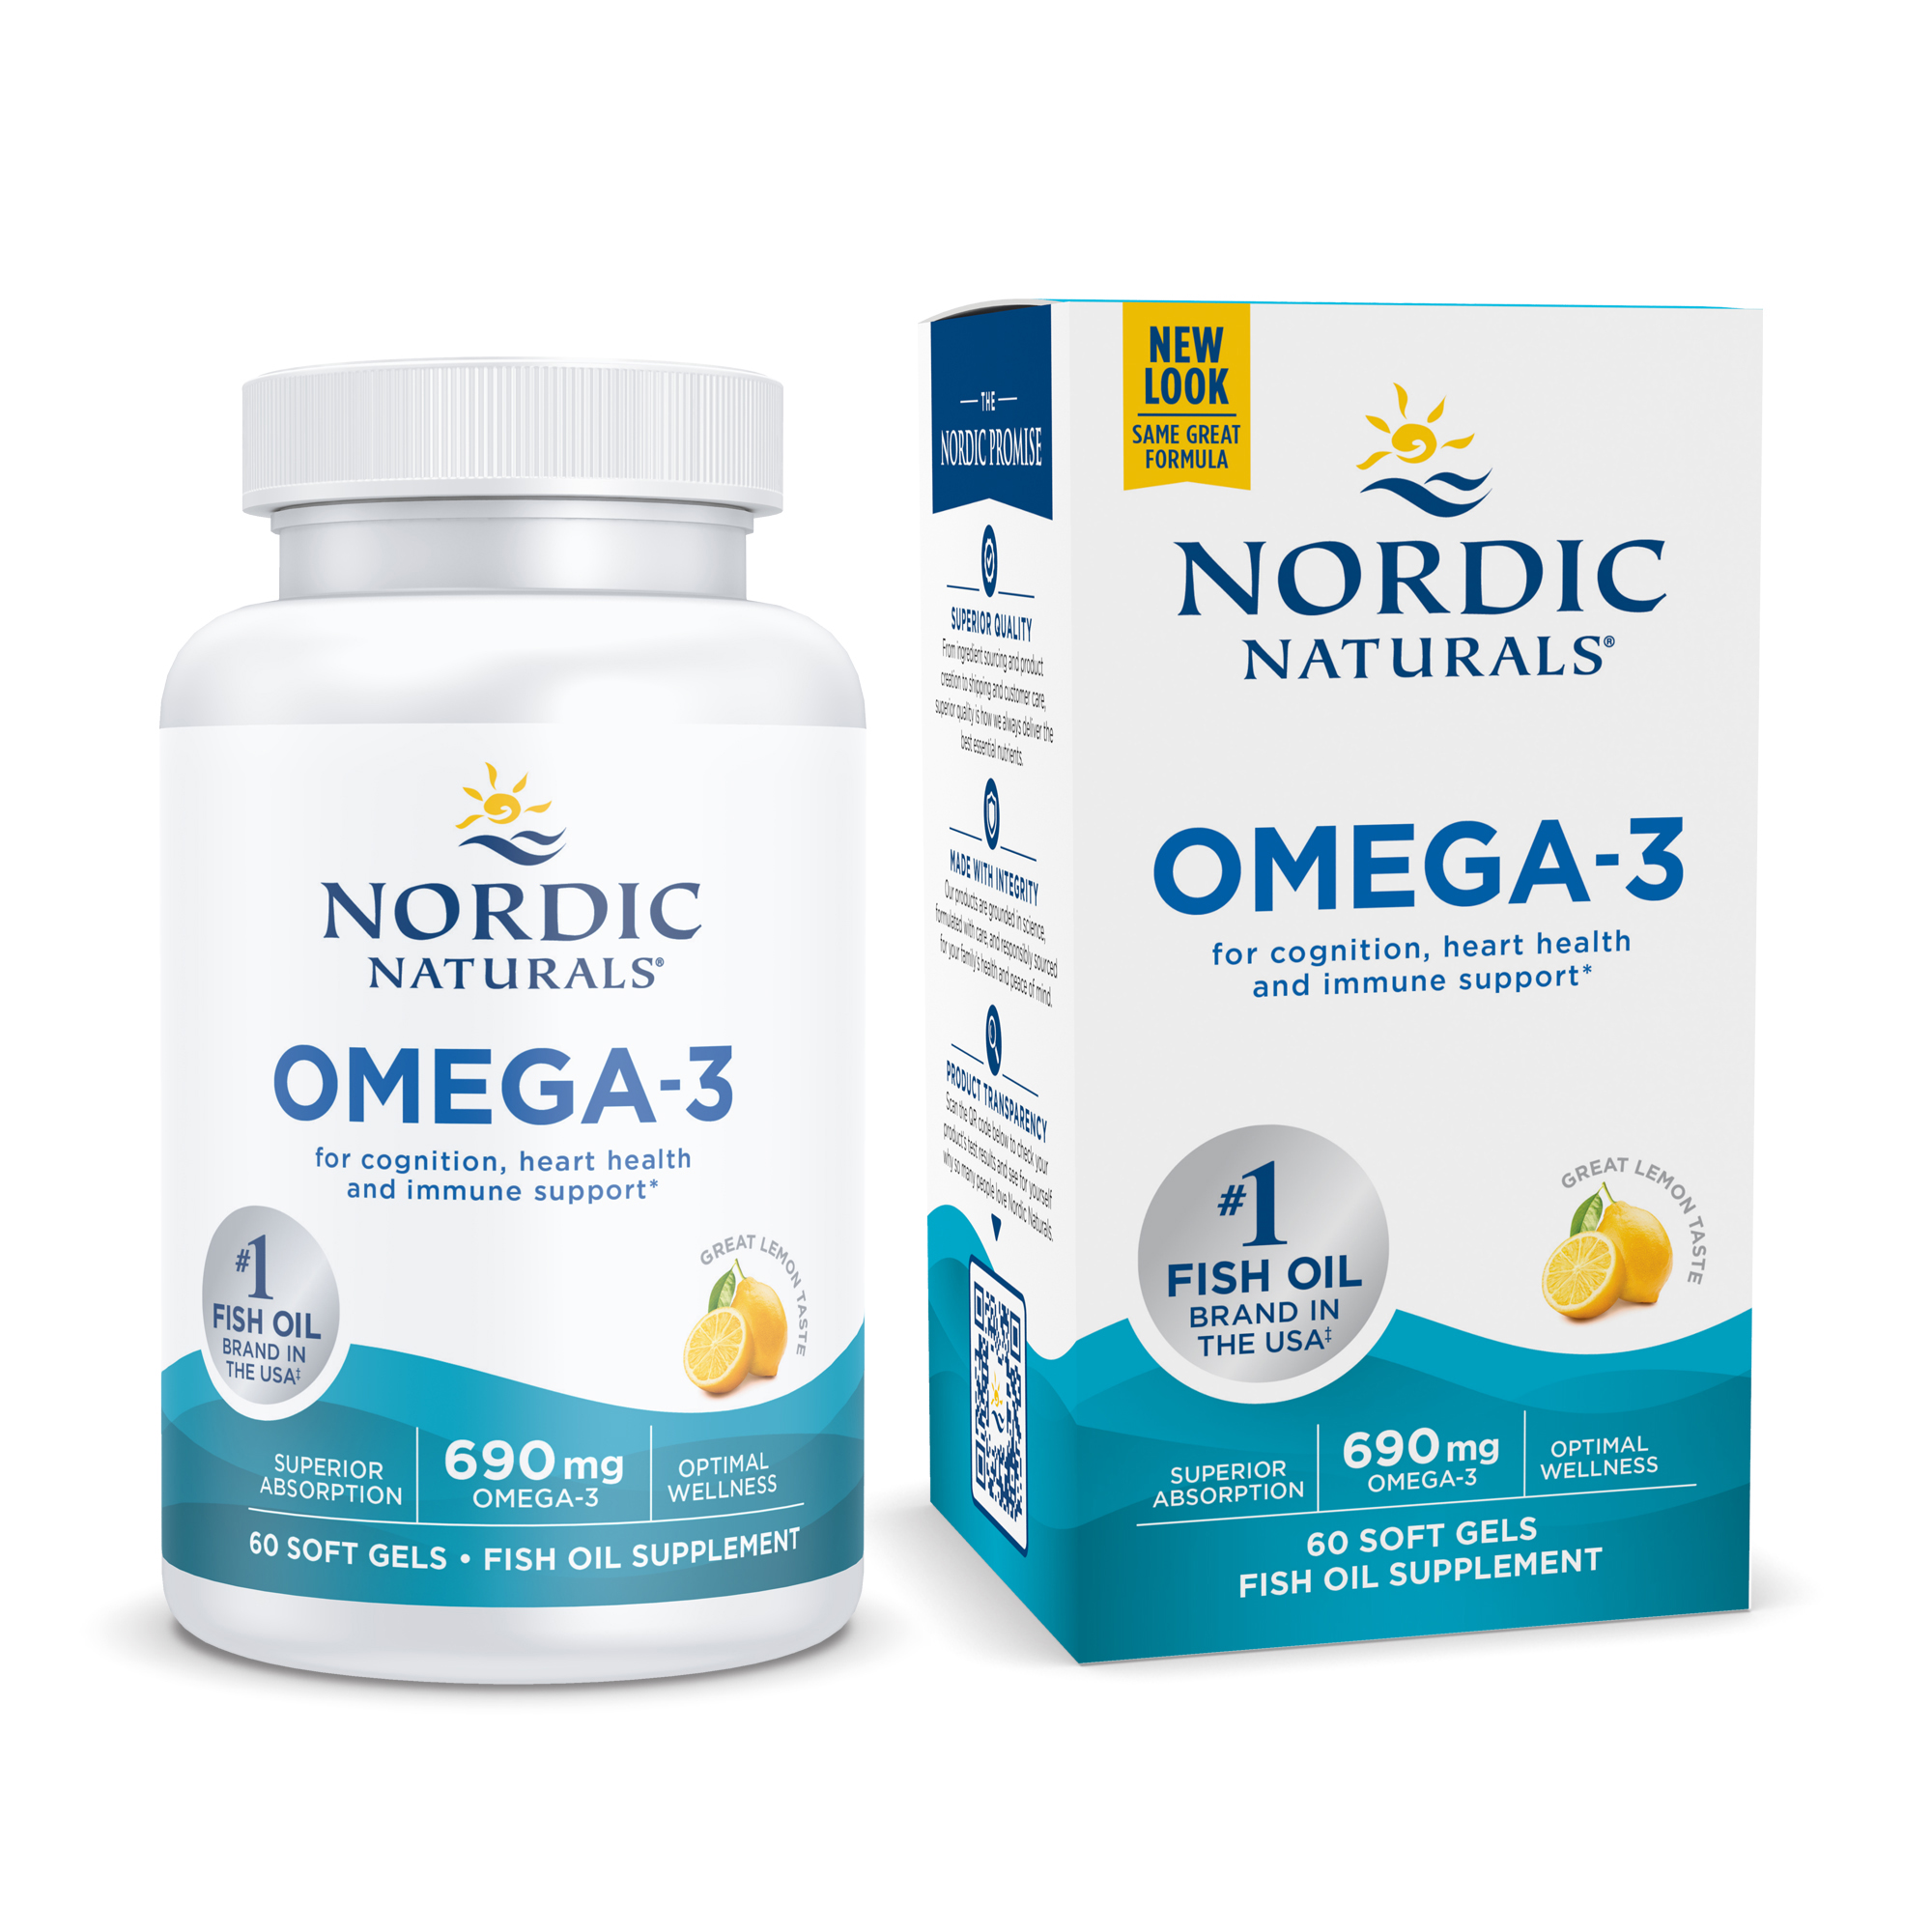 Omega-3 Nordic Naturals